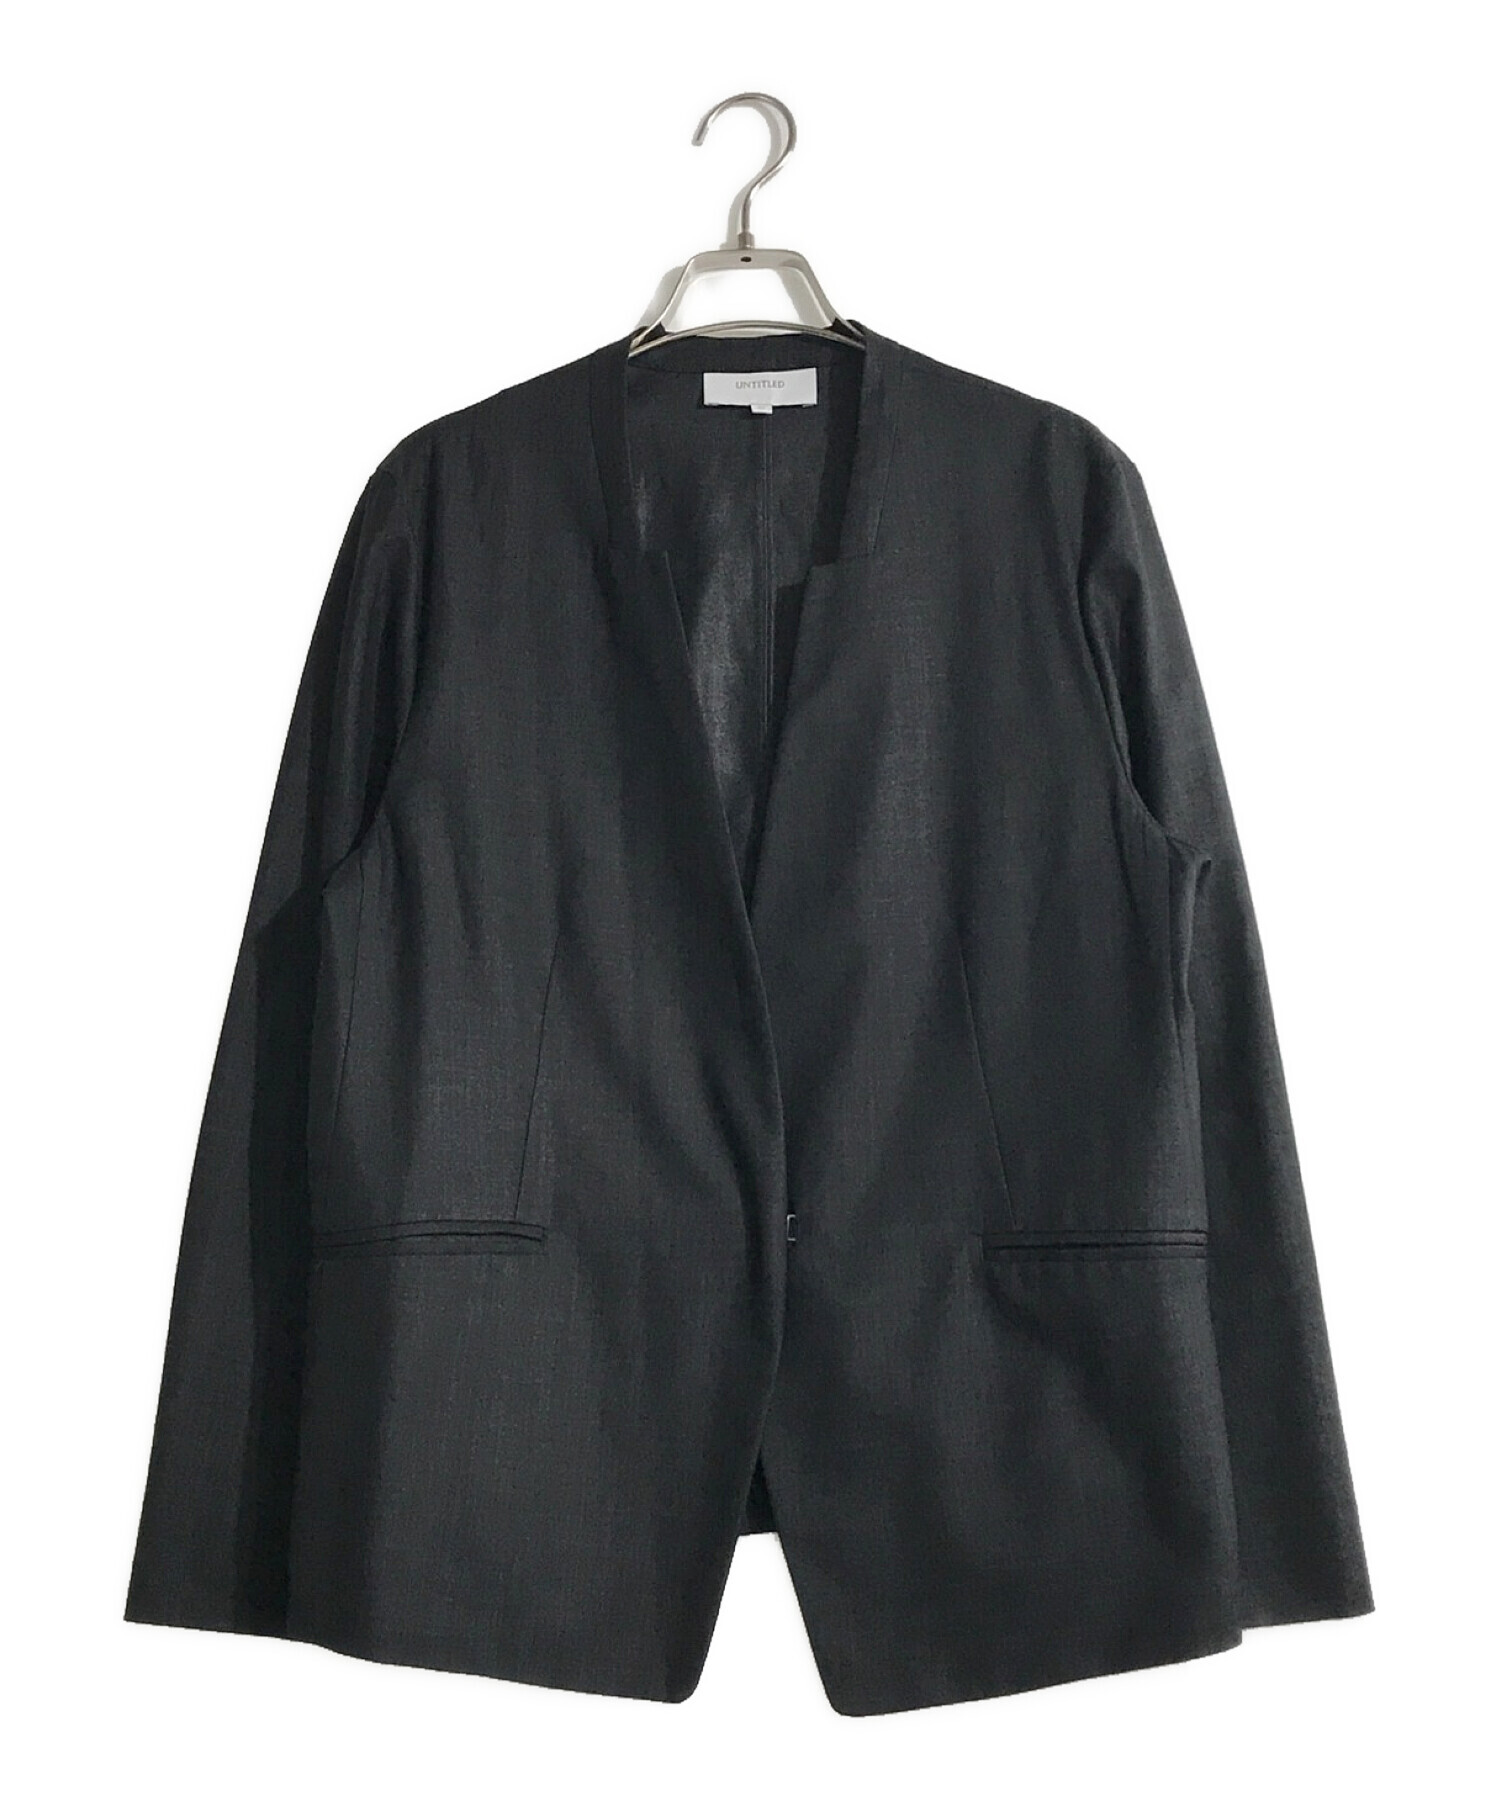 UNTITLED (アンタイトル) リネンライクデザインネックジャケット ブラック サイズ:42